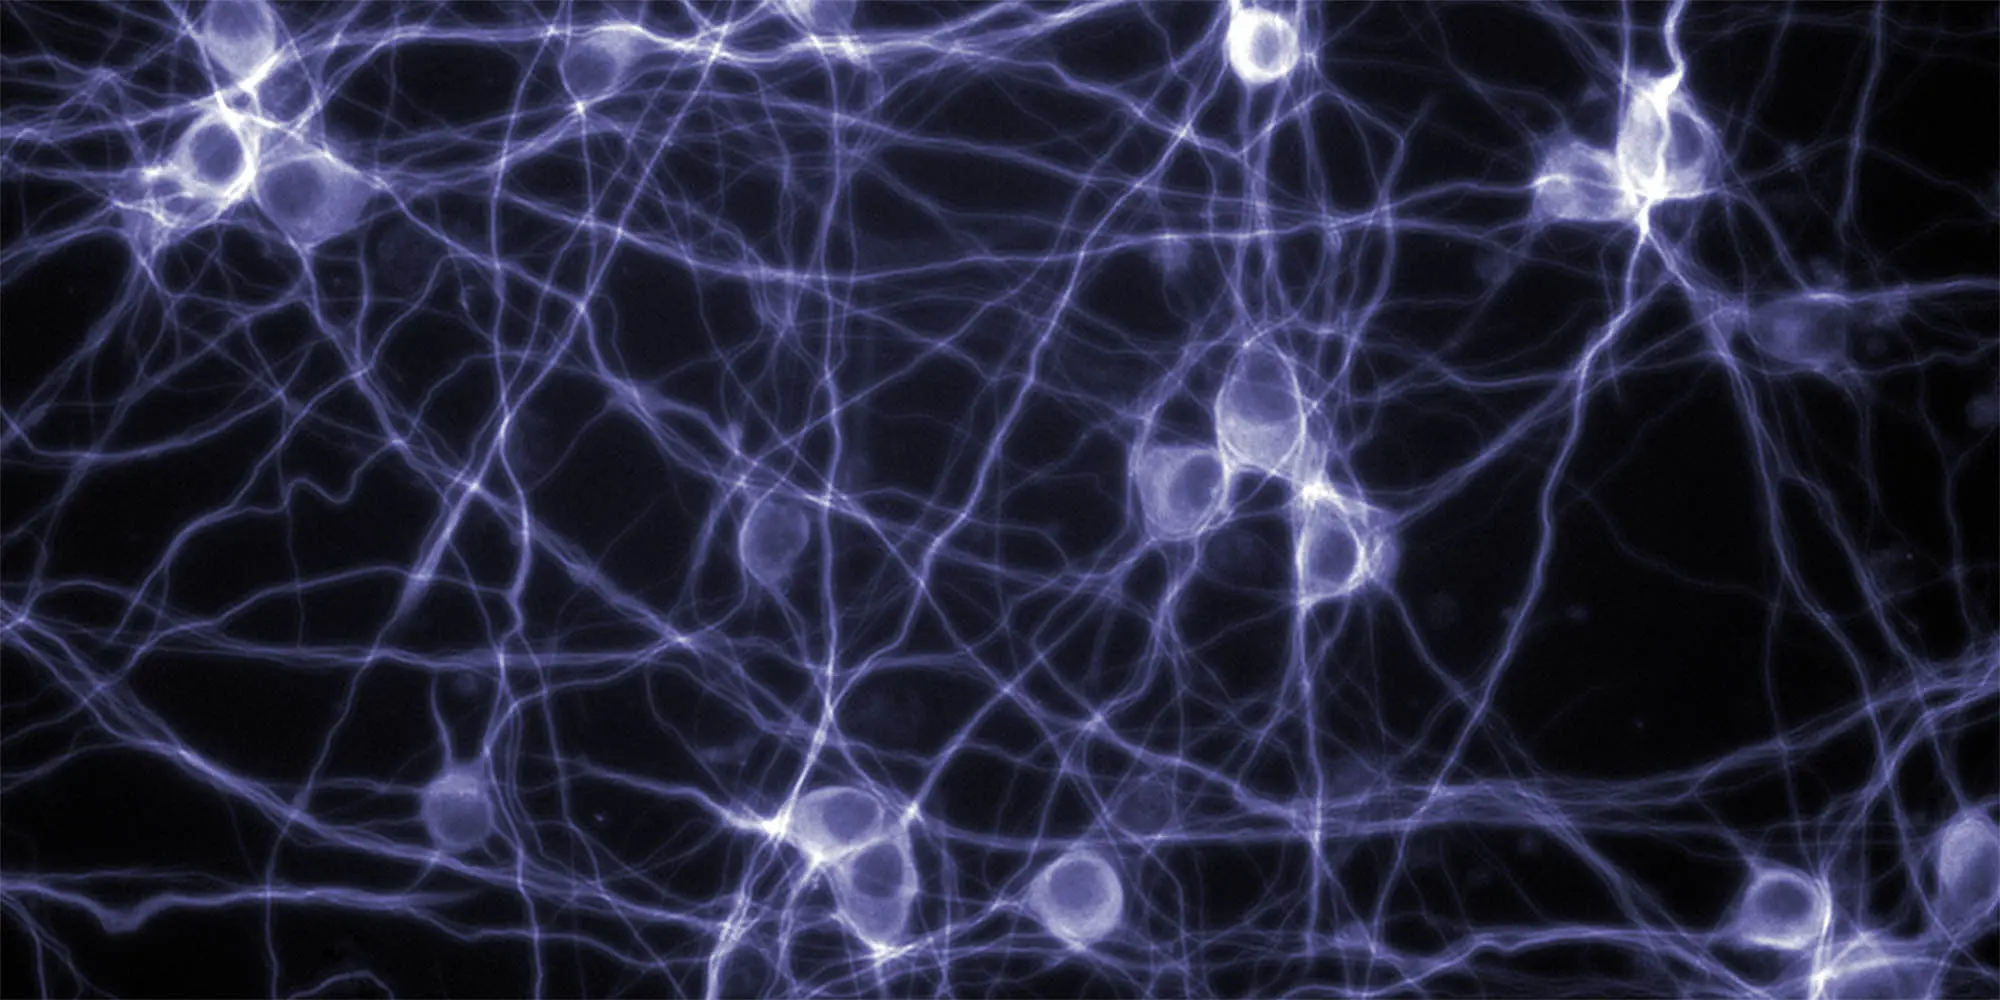 neuron-modeling-2000x1000-min.jpg